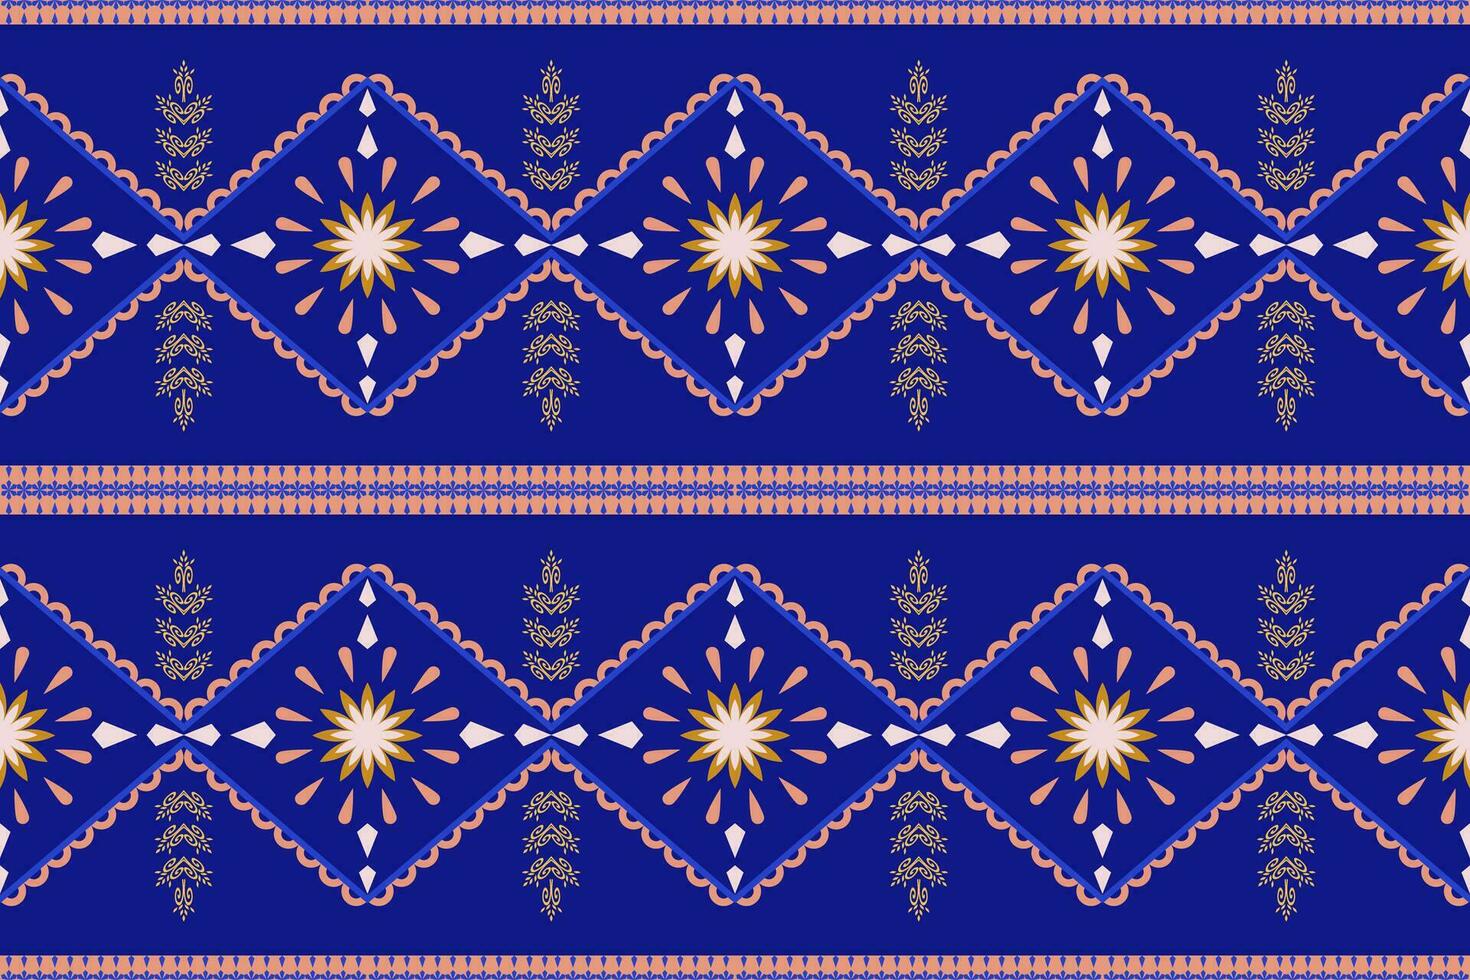 Hintergrund Textil- Vektor Illustration aufwendig elegant Jahrgang Stil.geometrisch ethnisch orientalisch Muster traditionell aztekisch Stil abstraktes.design zum Textur, Stoff, Kleidung, Verpackung, Teppich.